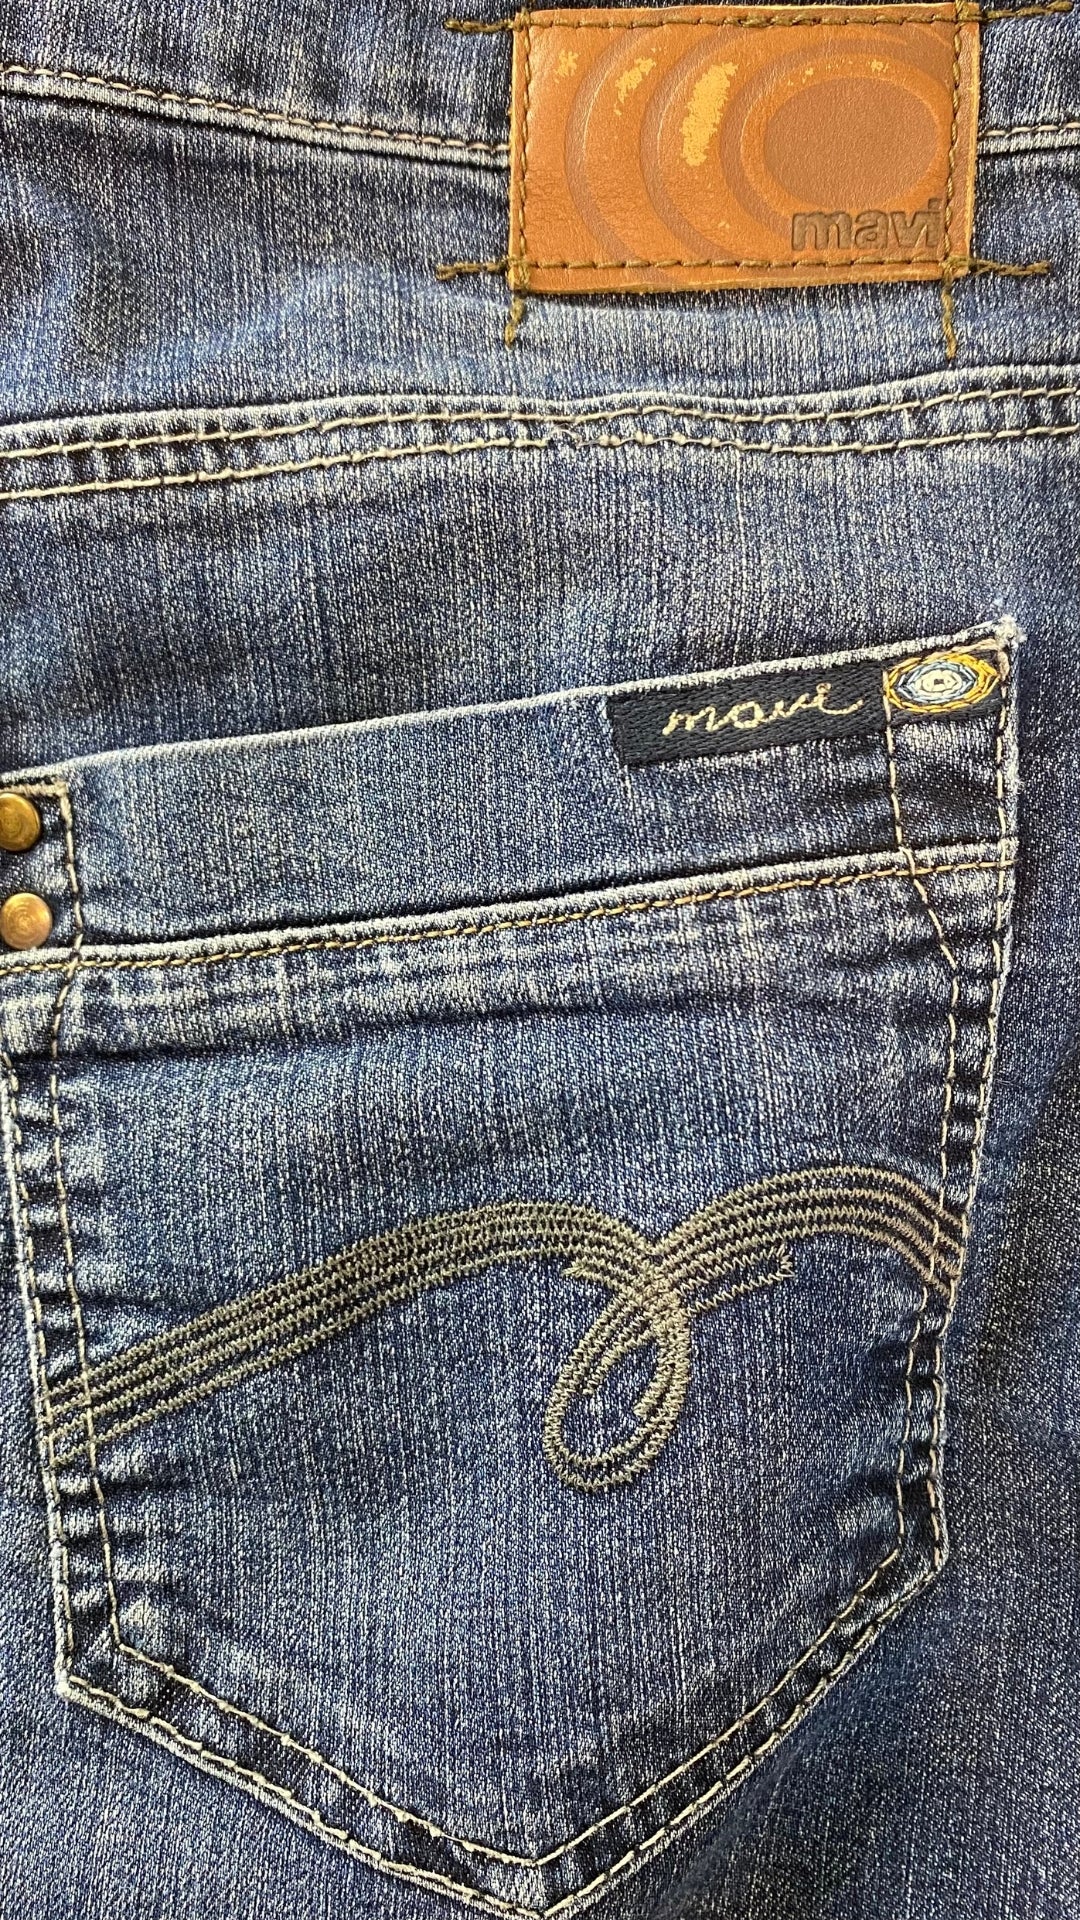 Jupe en jeans classique bleue Mavi, taille estimée à small. Vue de la poche arrière.